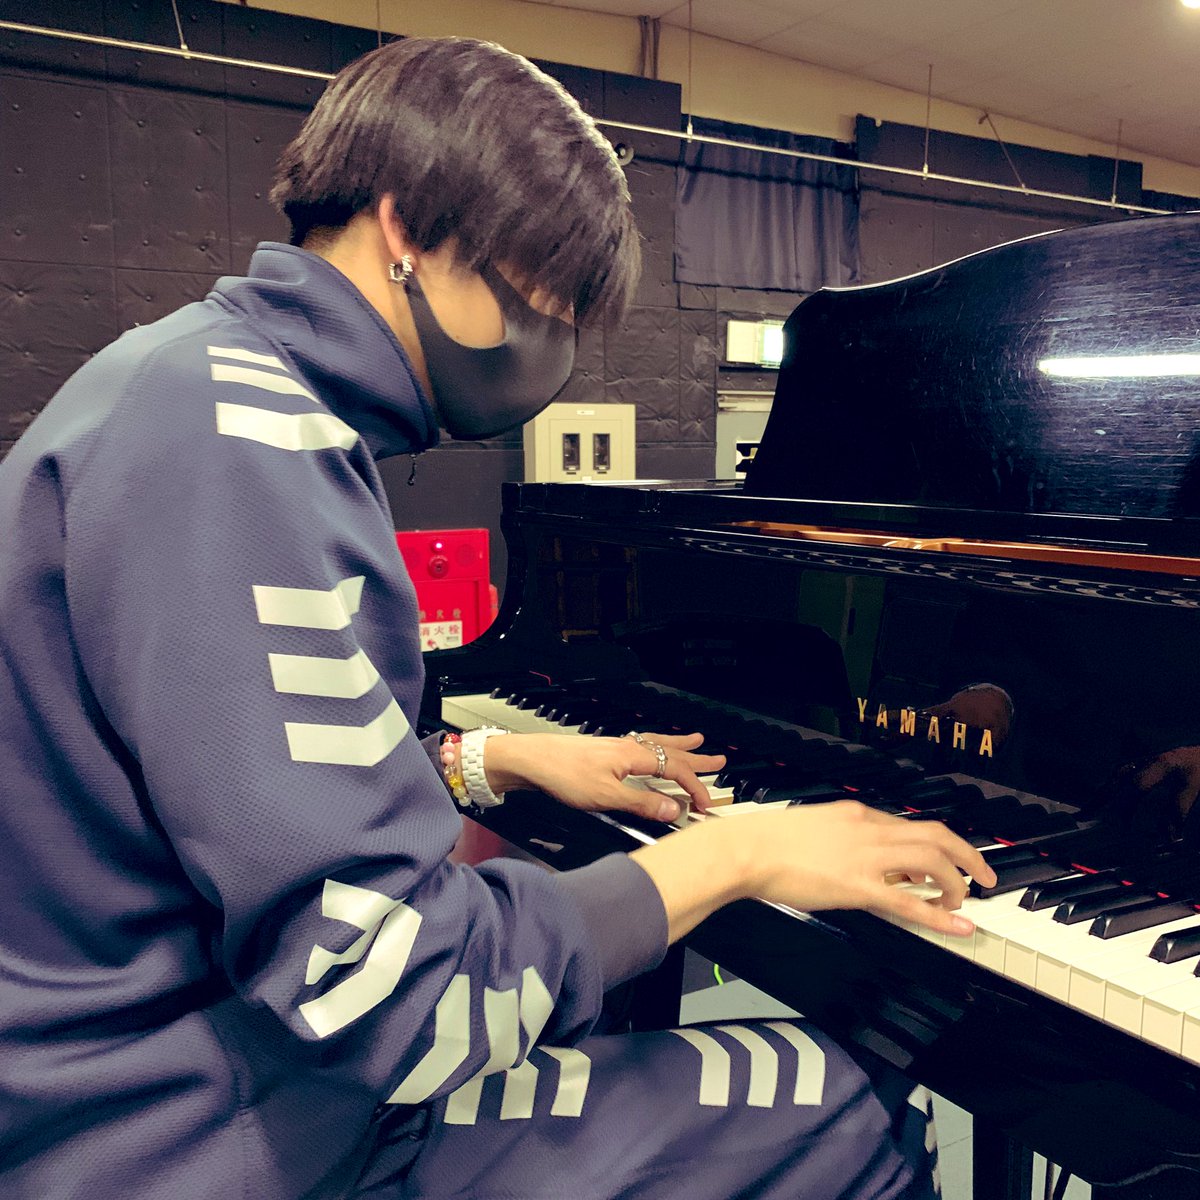 赤澤遼太郎 ピアノも弾けるなんて なんてかっこいいお兄さん ジャスティス T Co P9e5rqnz2f Twitter